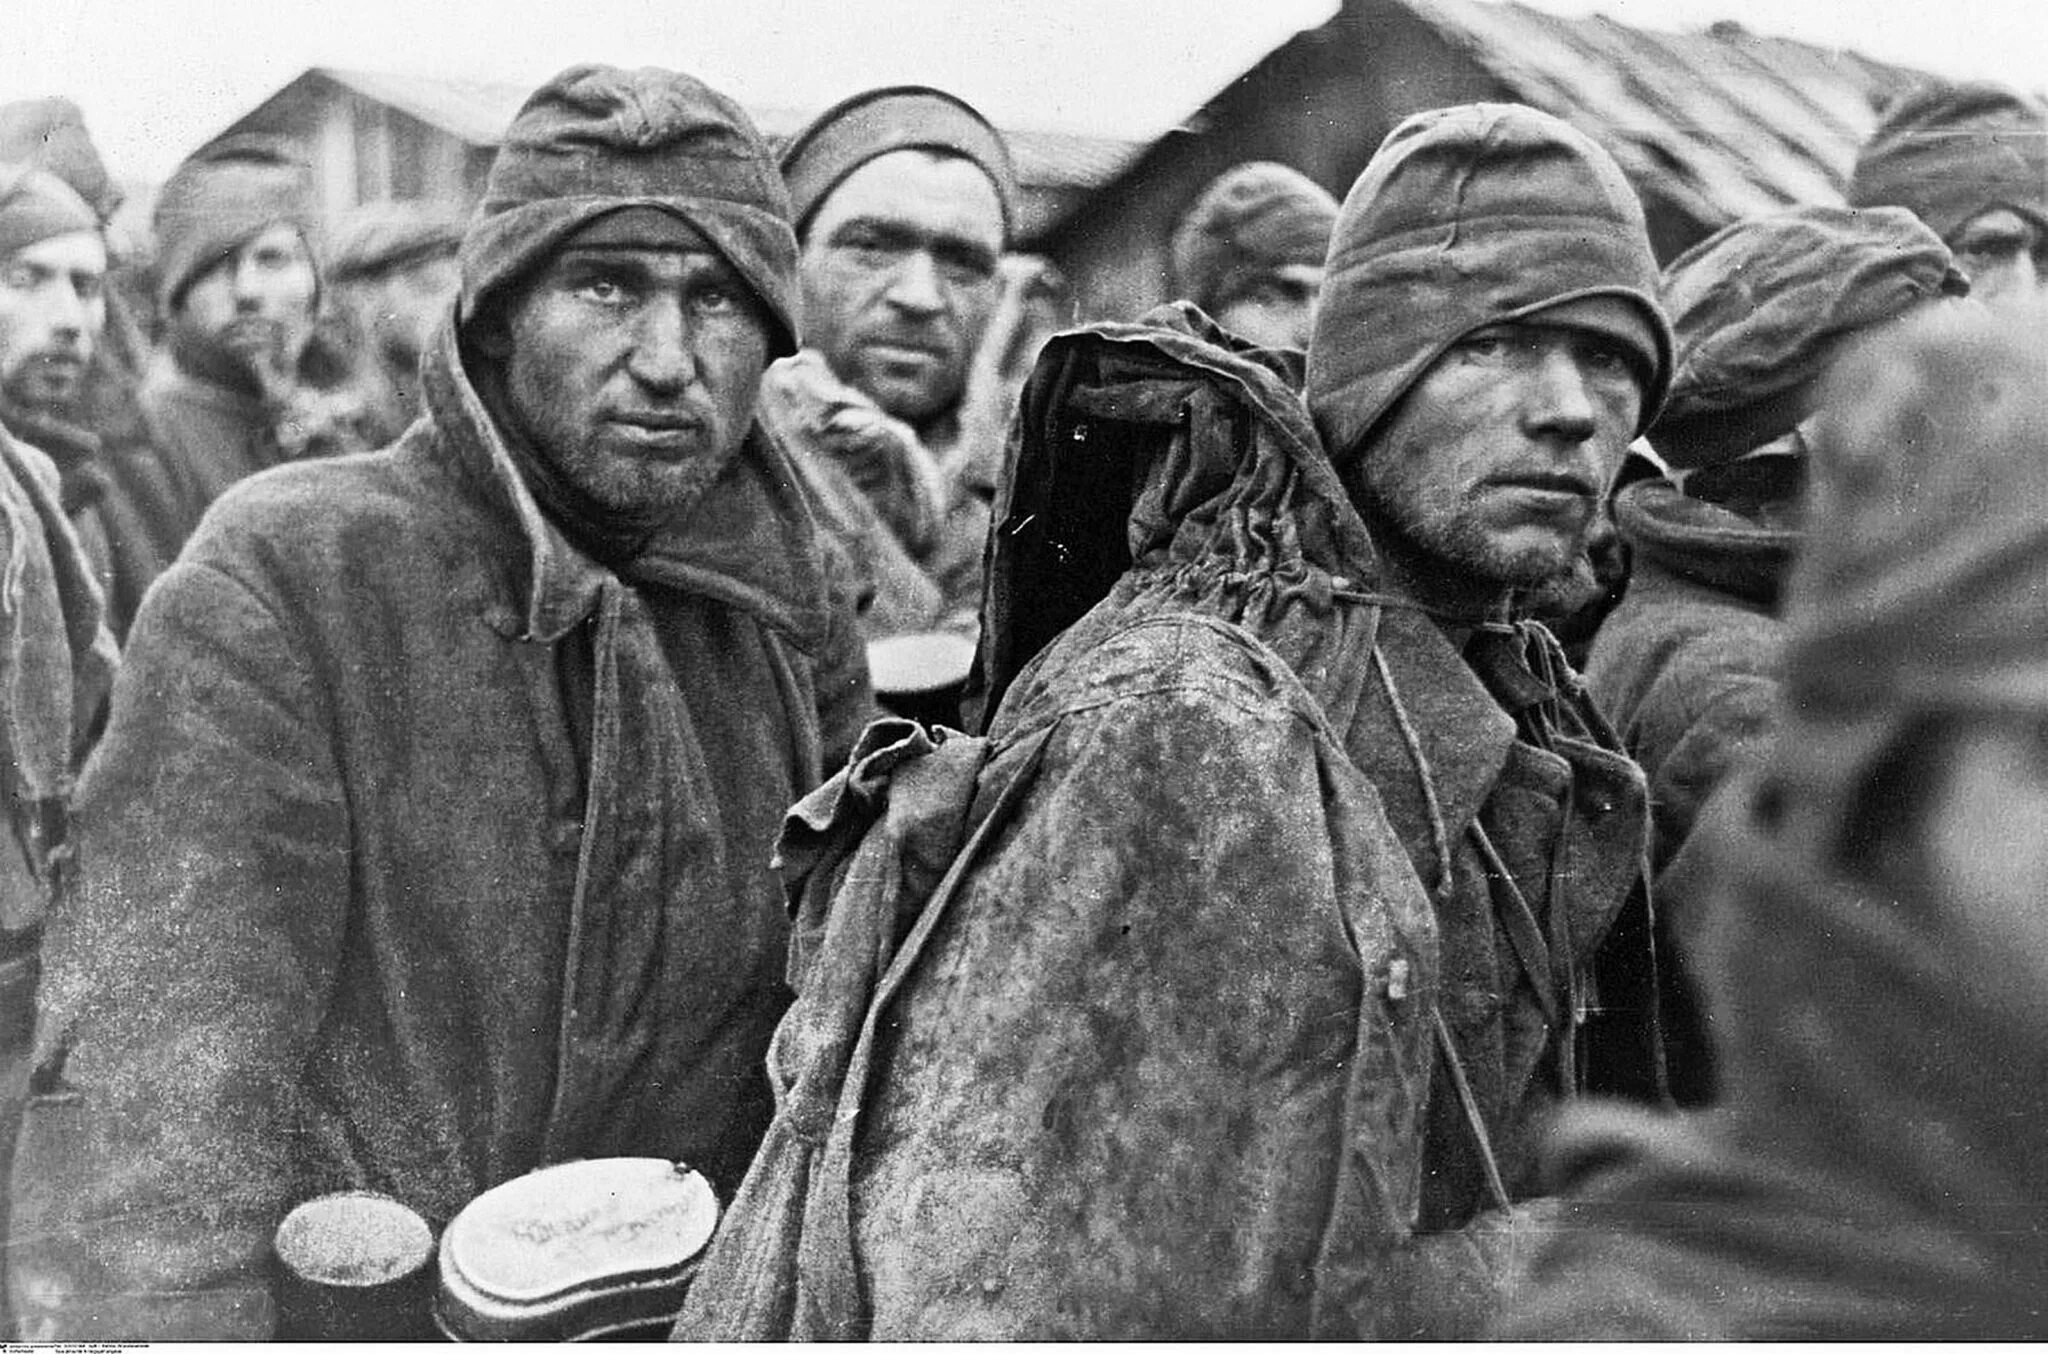 Пленные советские солдаты 1941 Вязьма. Пленные под Вязьмой в 1941. Пленные красноармейцы 1941 унтерменш. Военнопленные великой отечественной войны